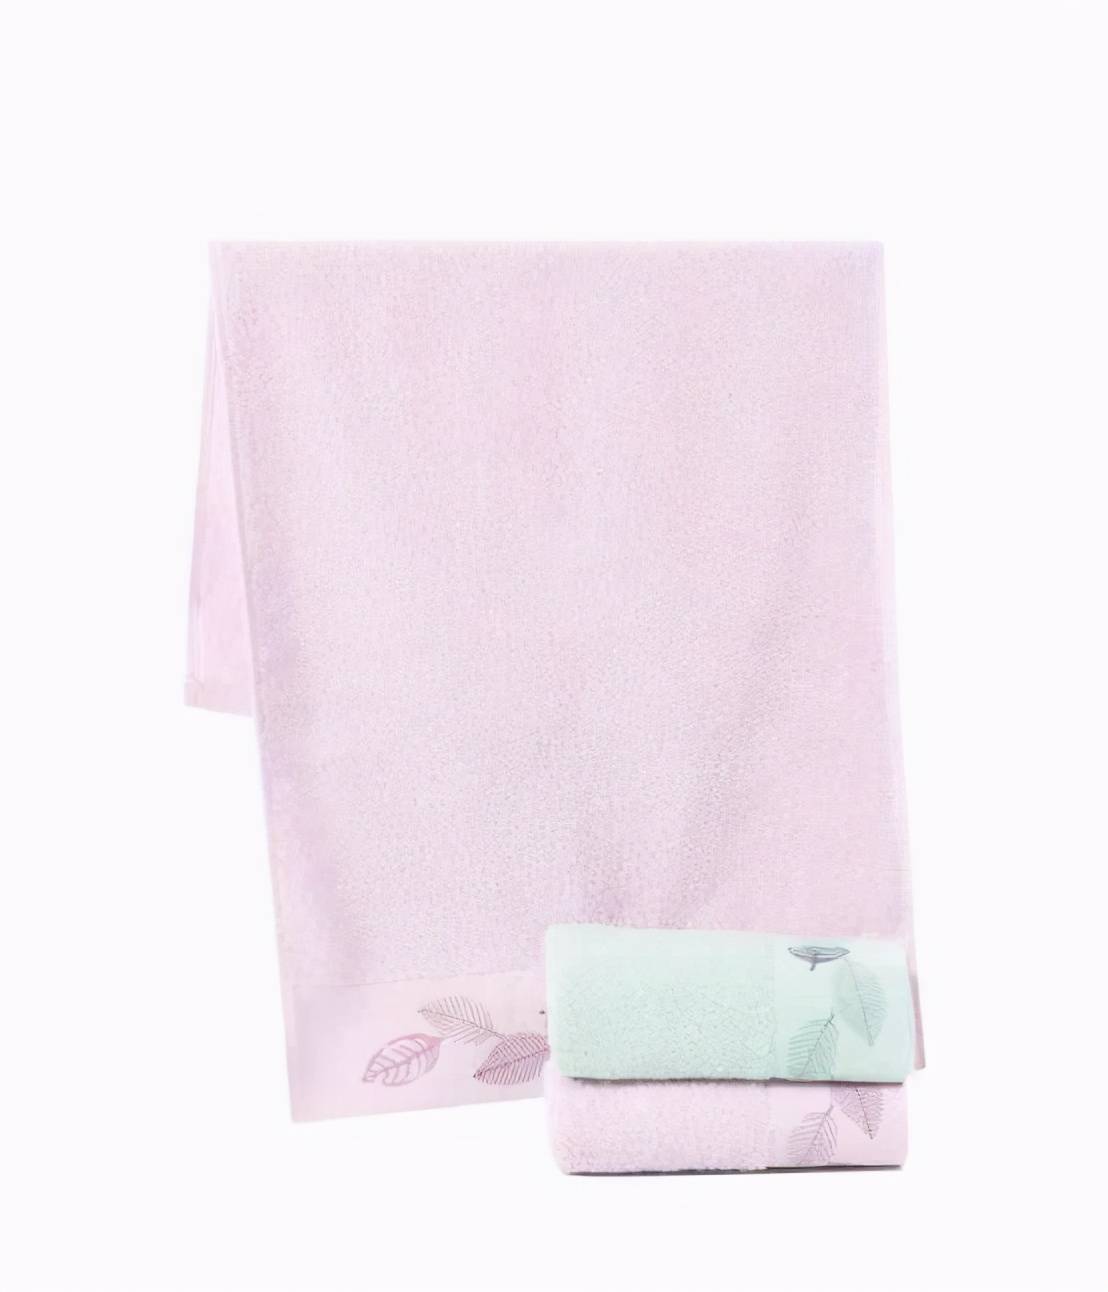 纯棉毛巾和竹纤万和城注册维毛巾选哪个？